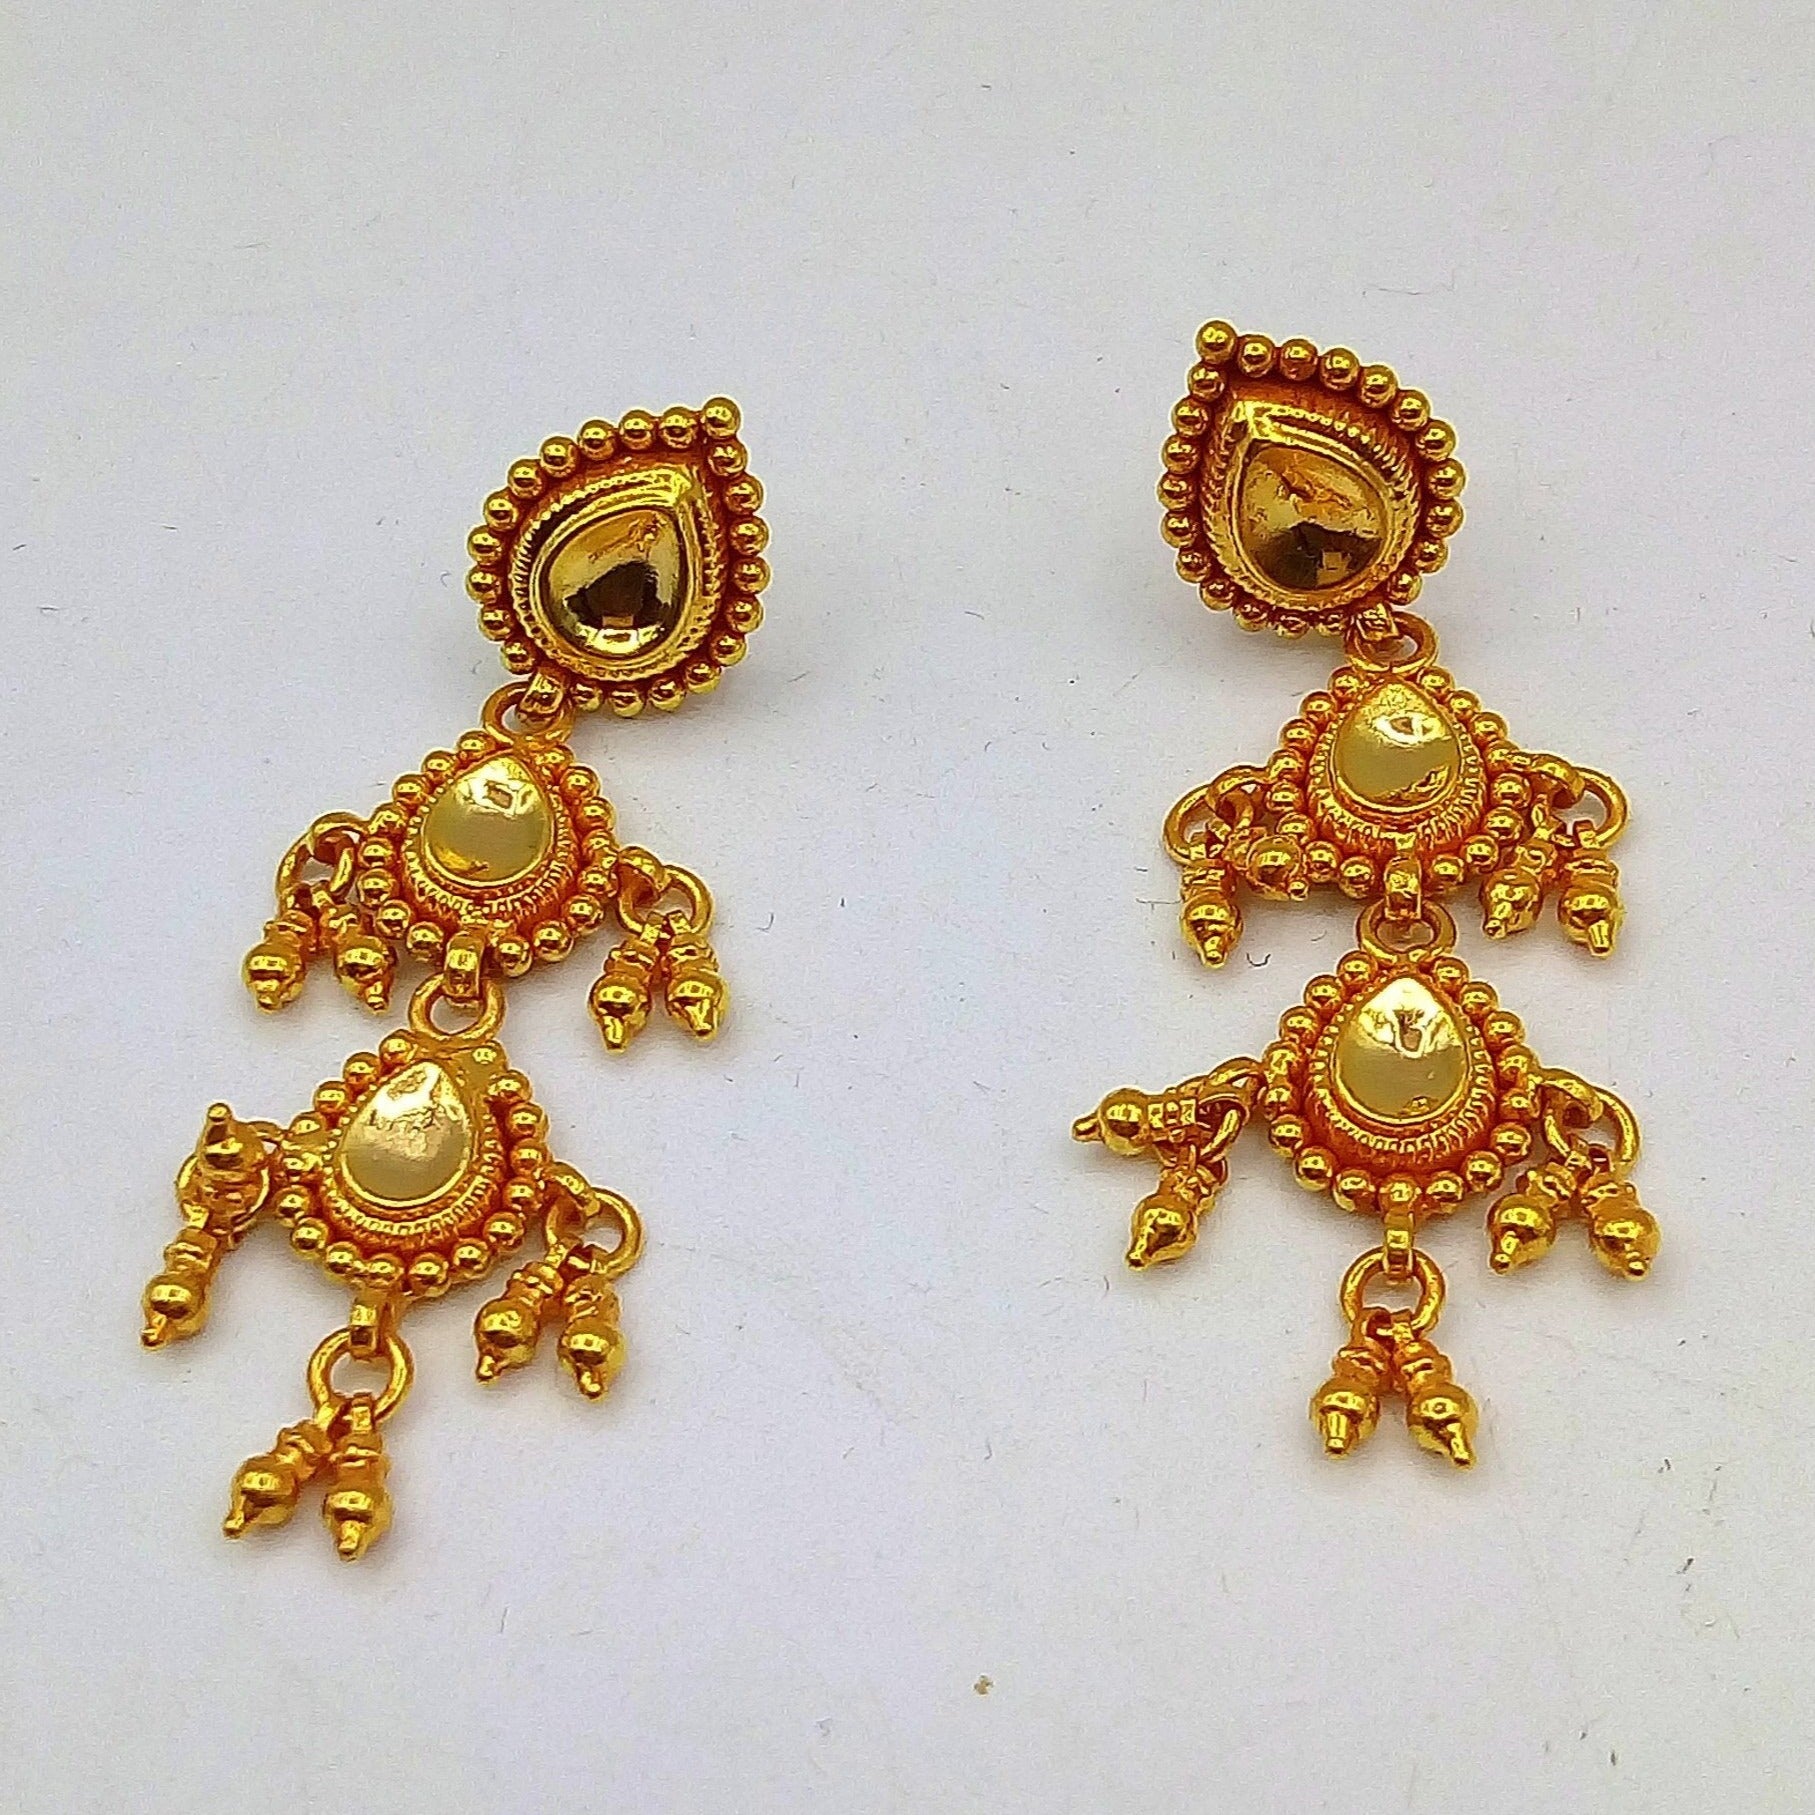 22K Gold Ear Hangings For Women - 235-GER16252 in 1.100 Grams